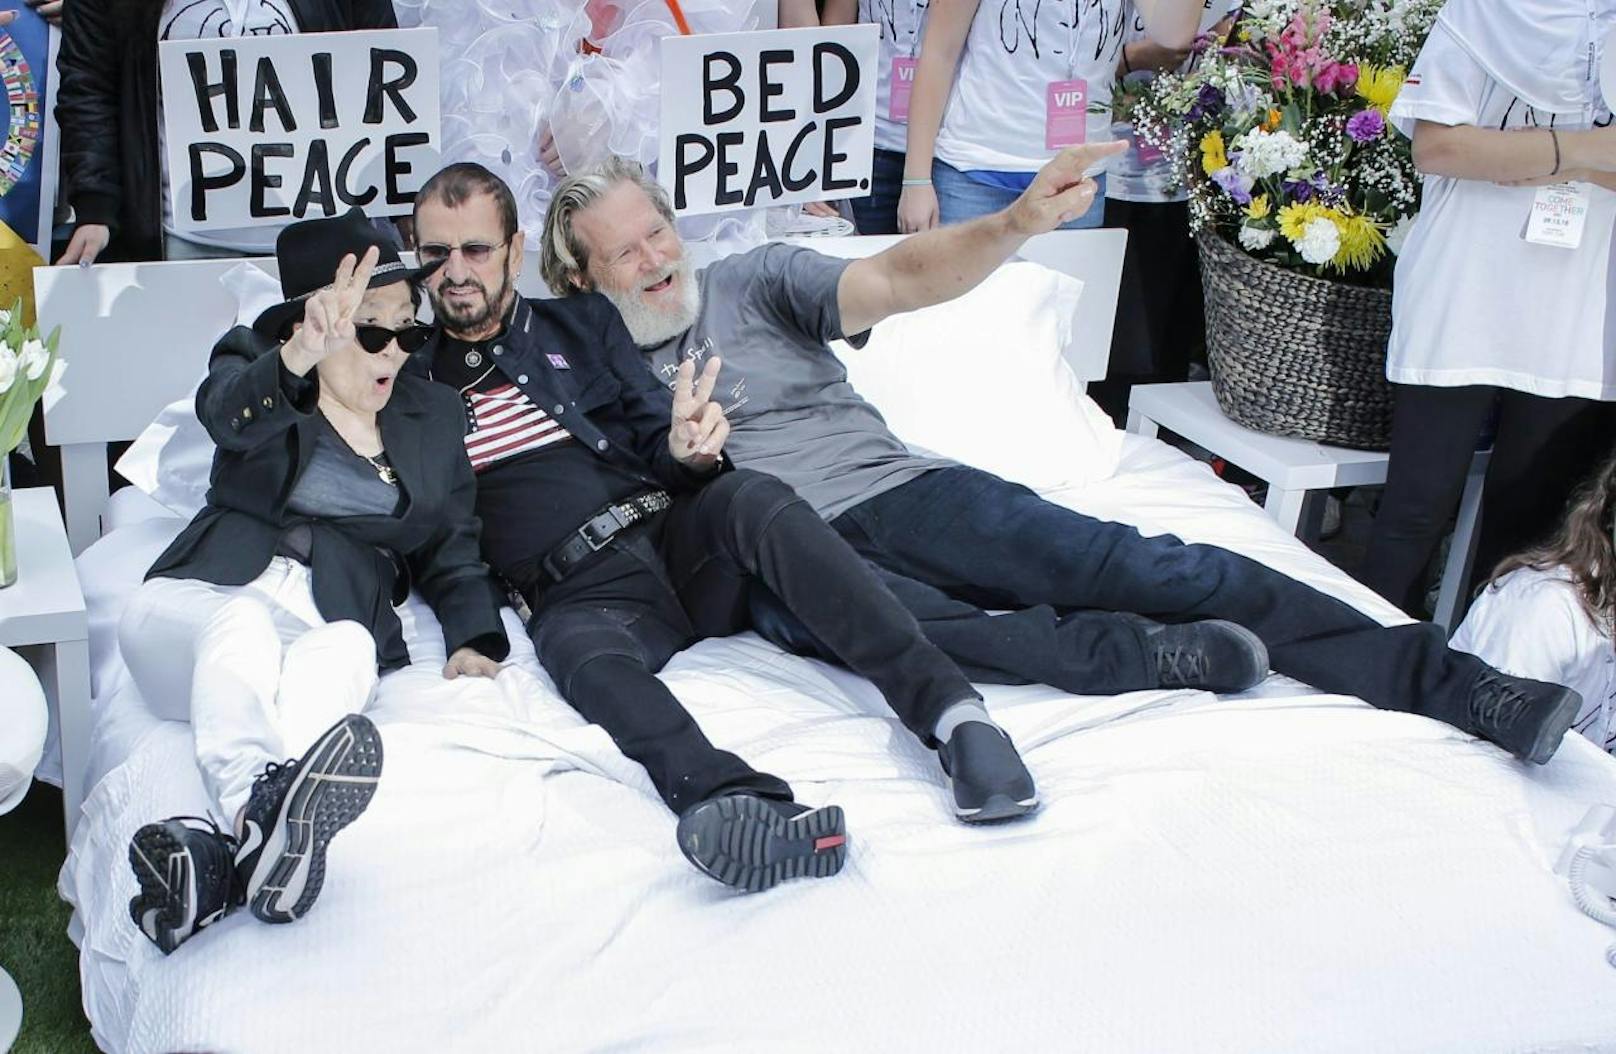 Die drei Stars ahmten das berühmte "Bed-in for Peace" aus dem Jahr 1969 nach